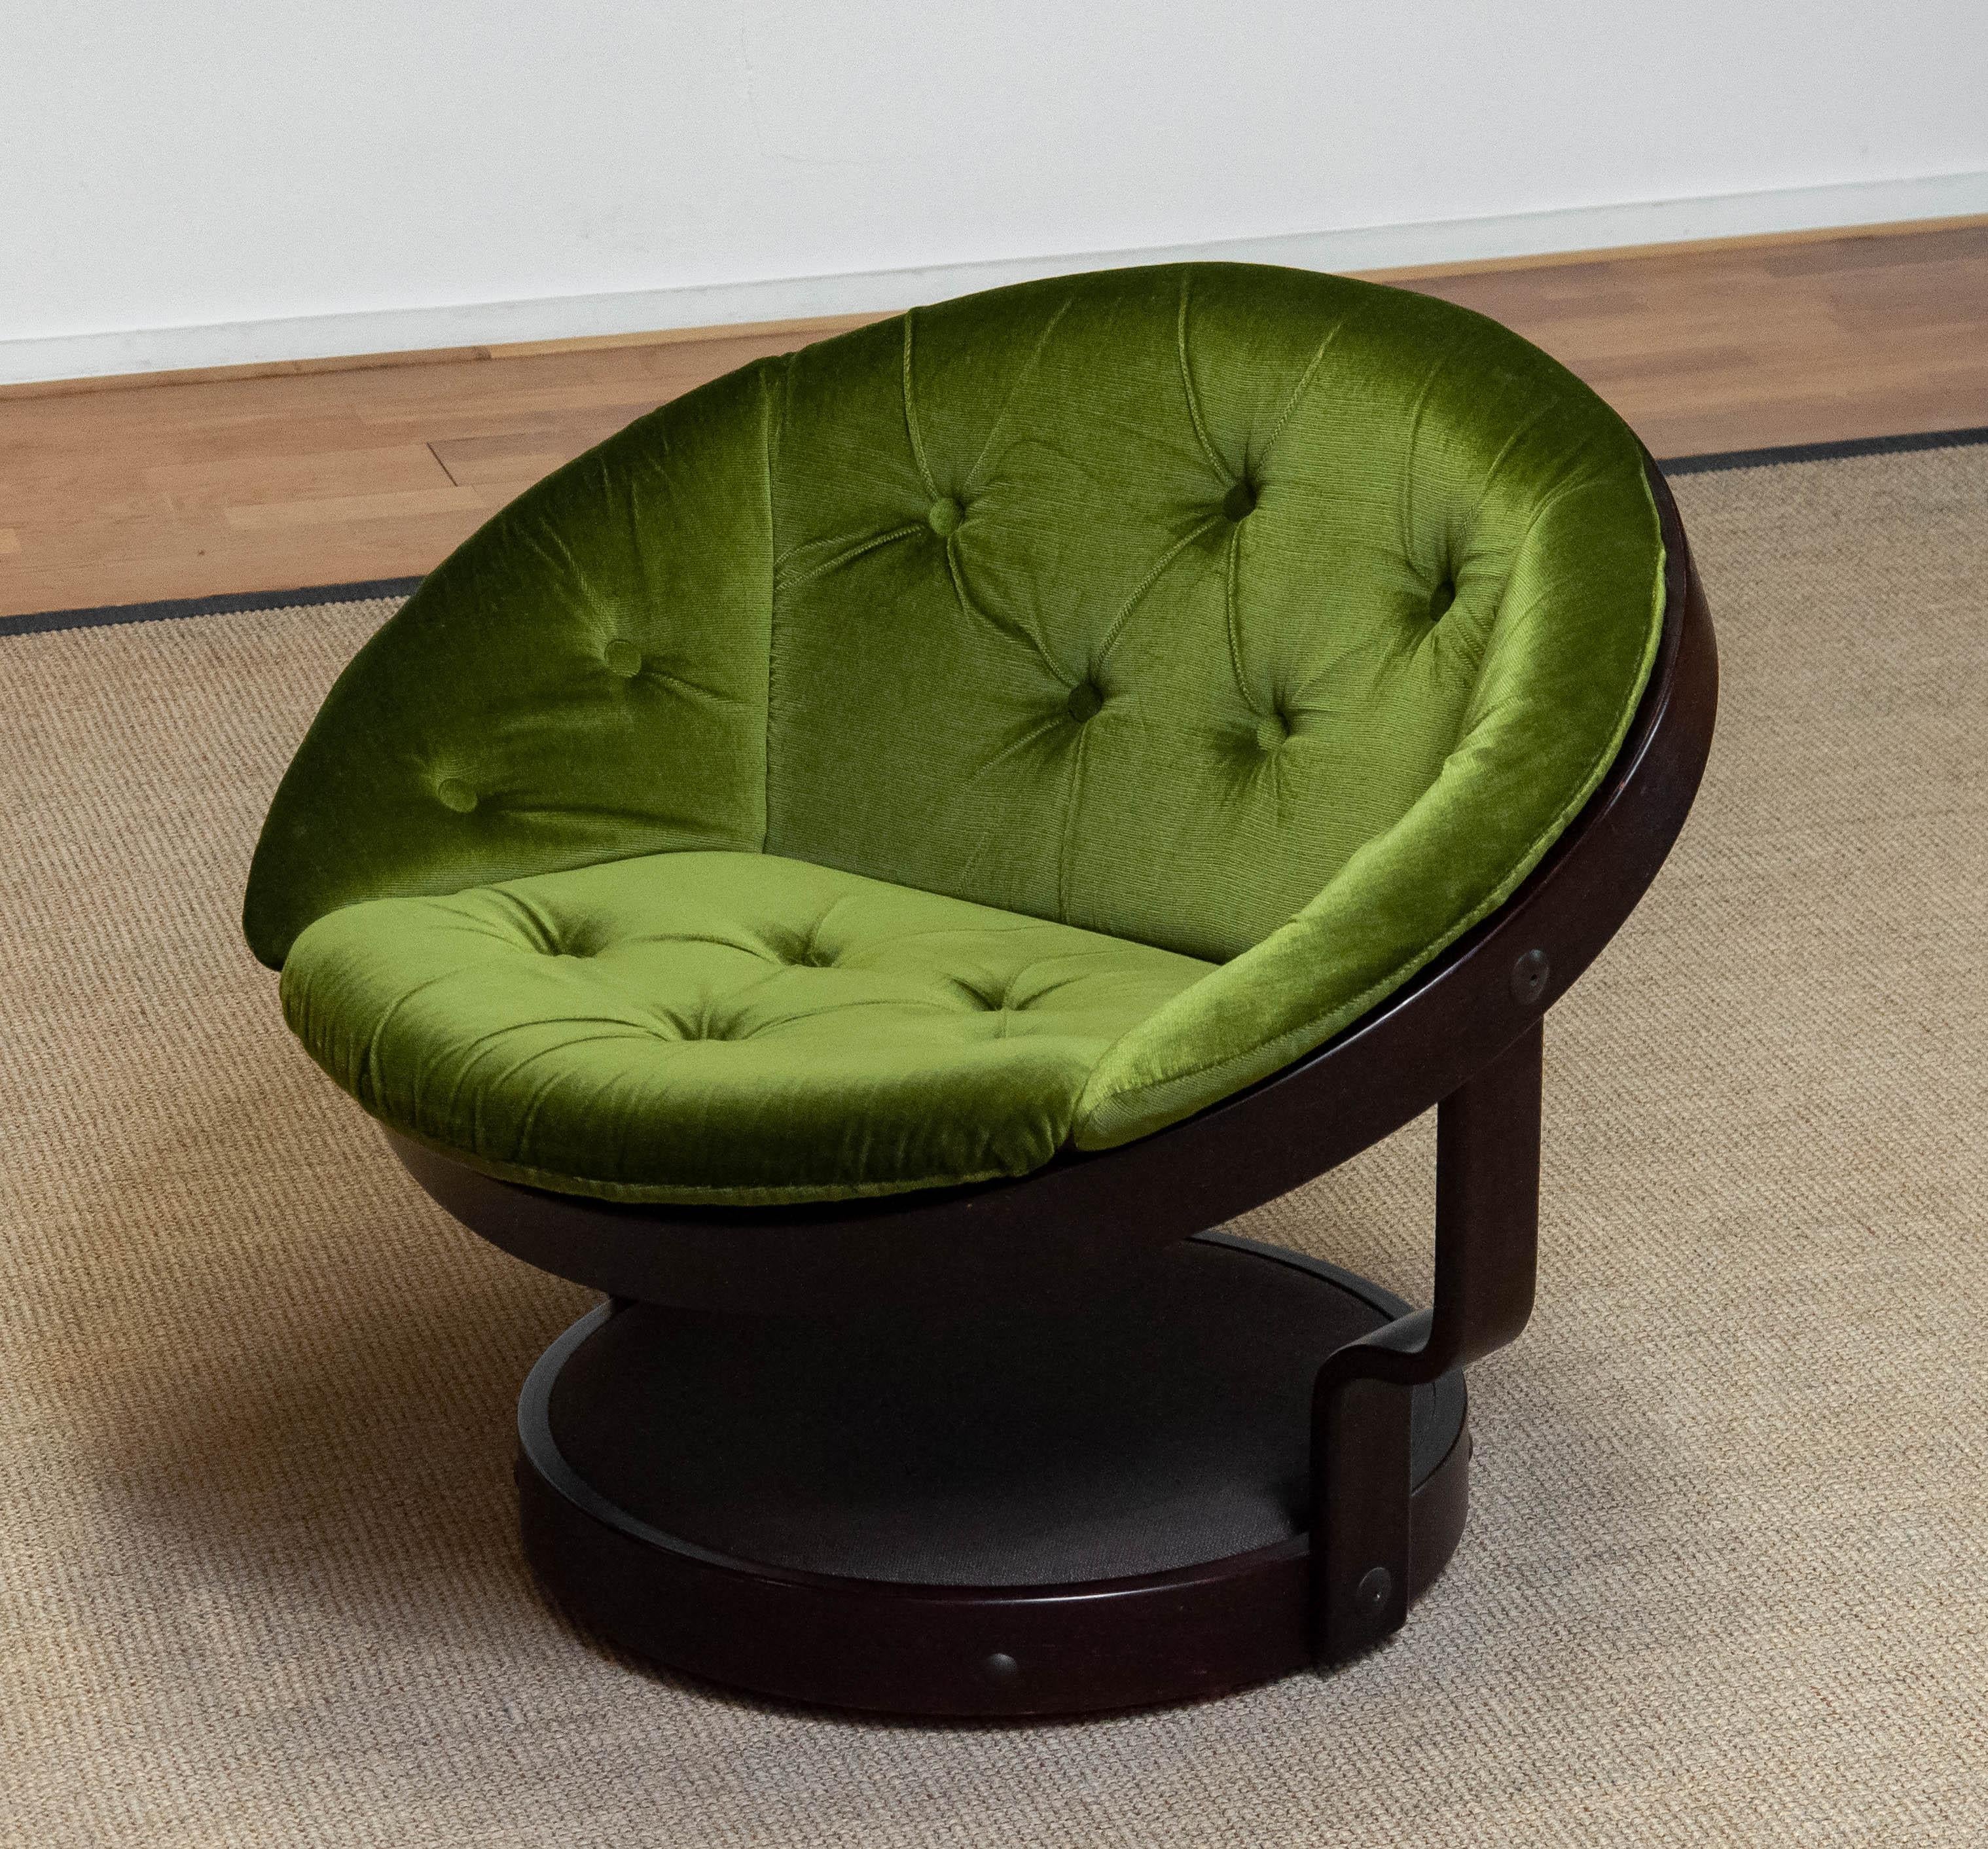 round green chair